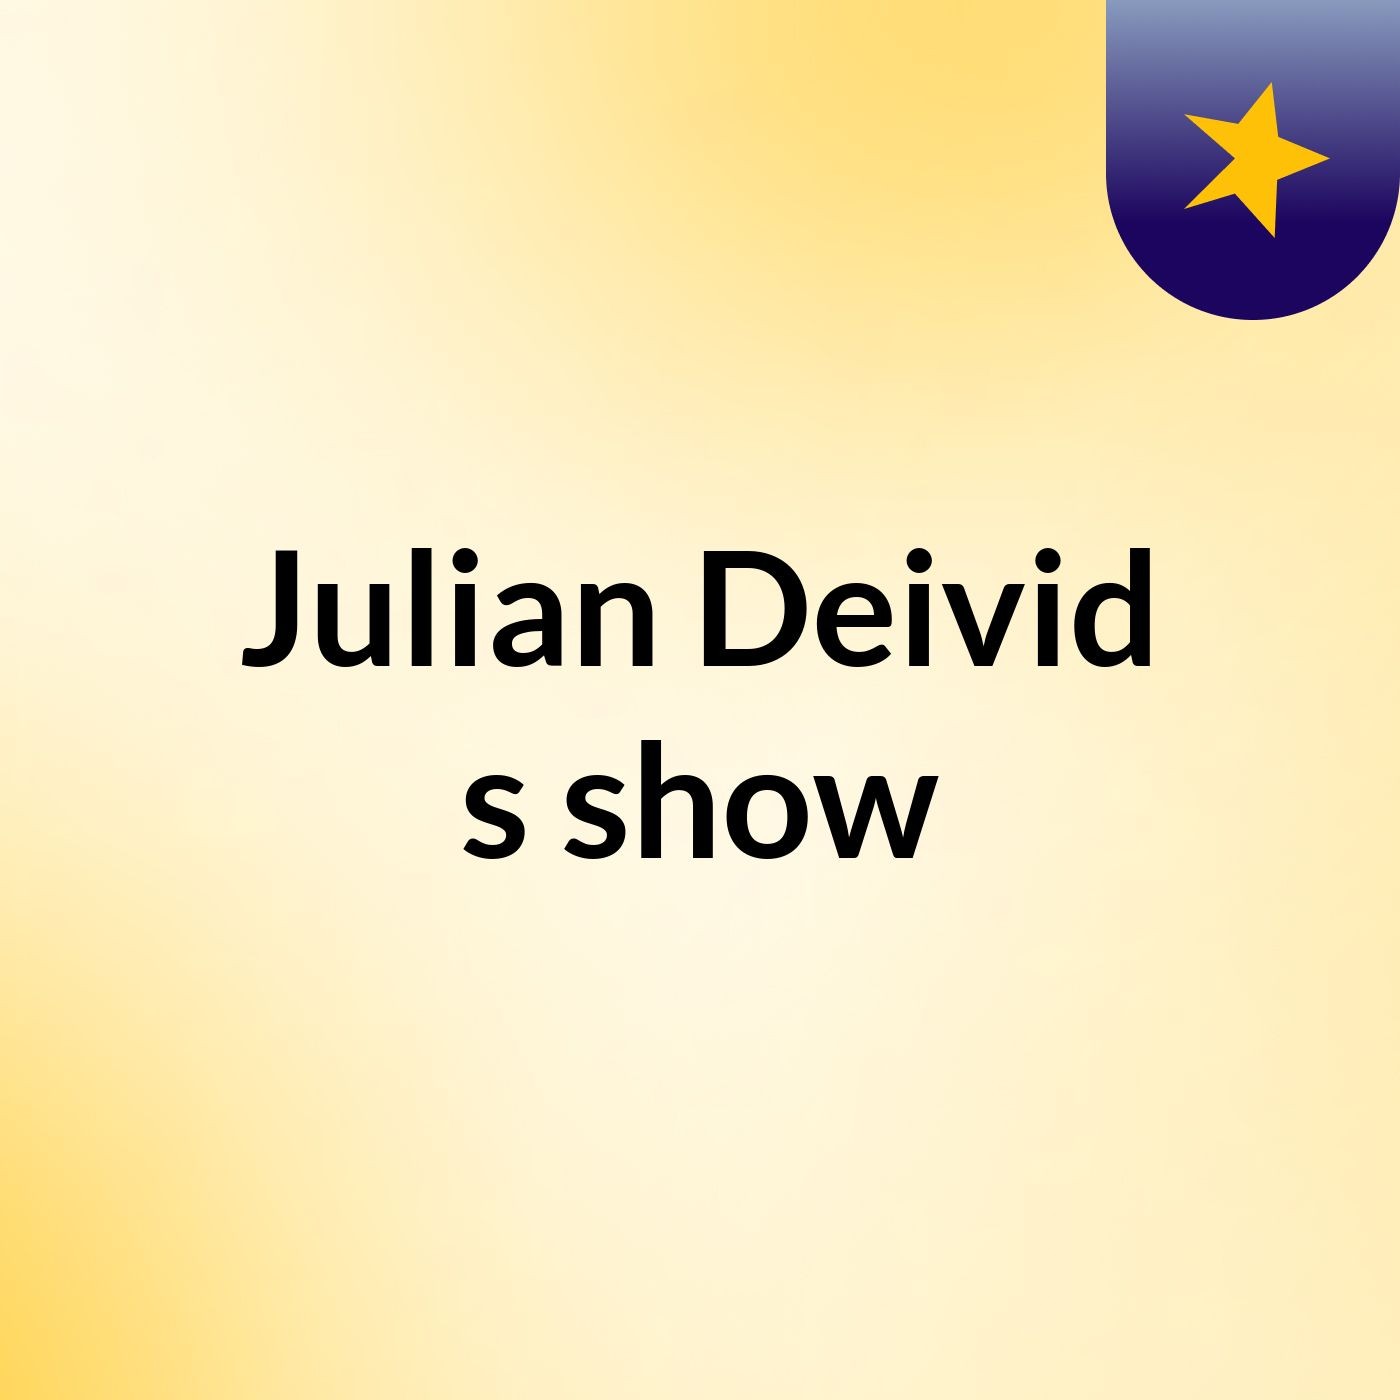 Julian Deivid's show